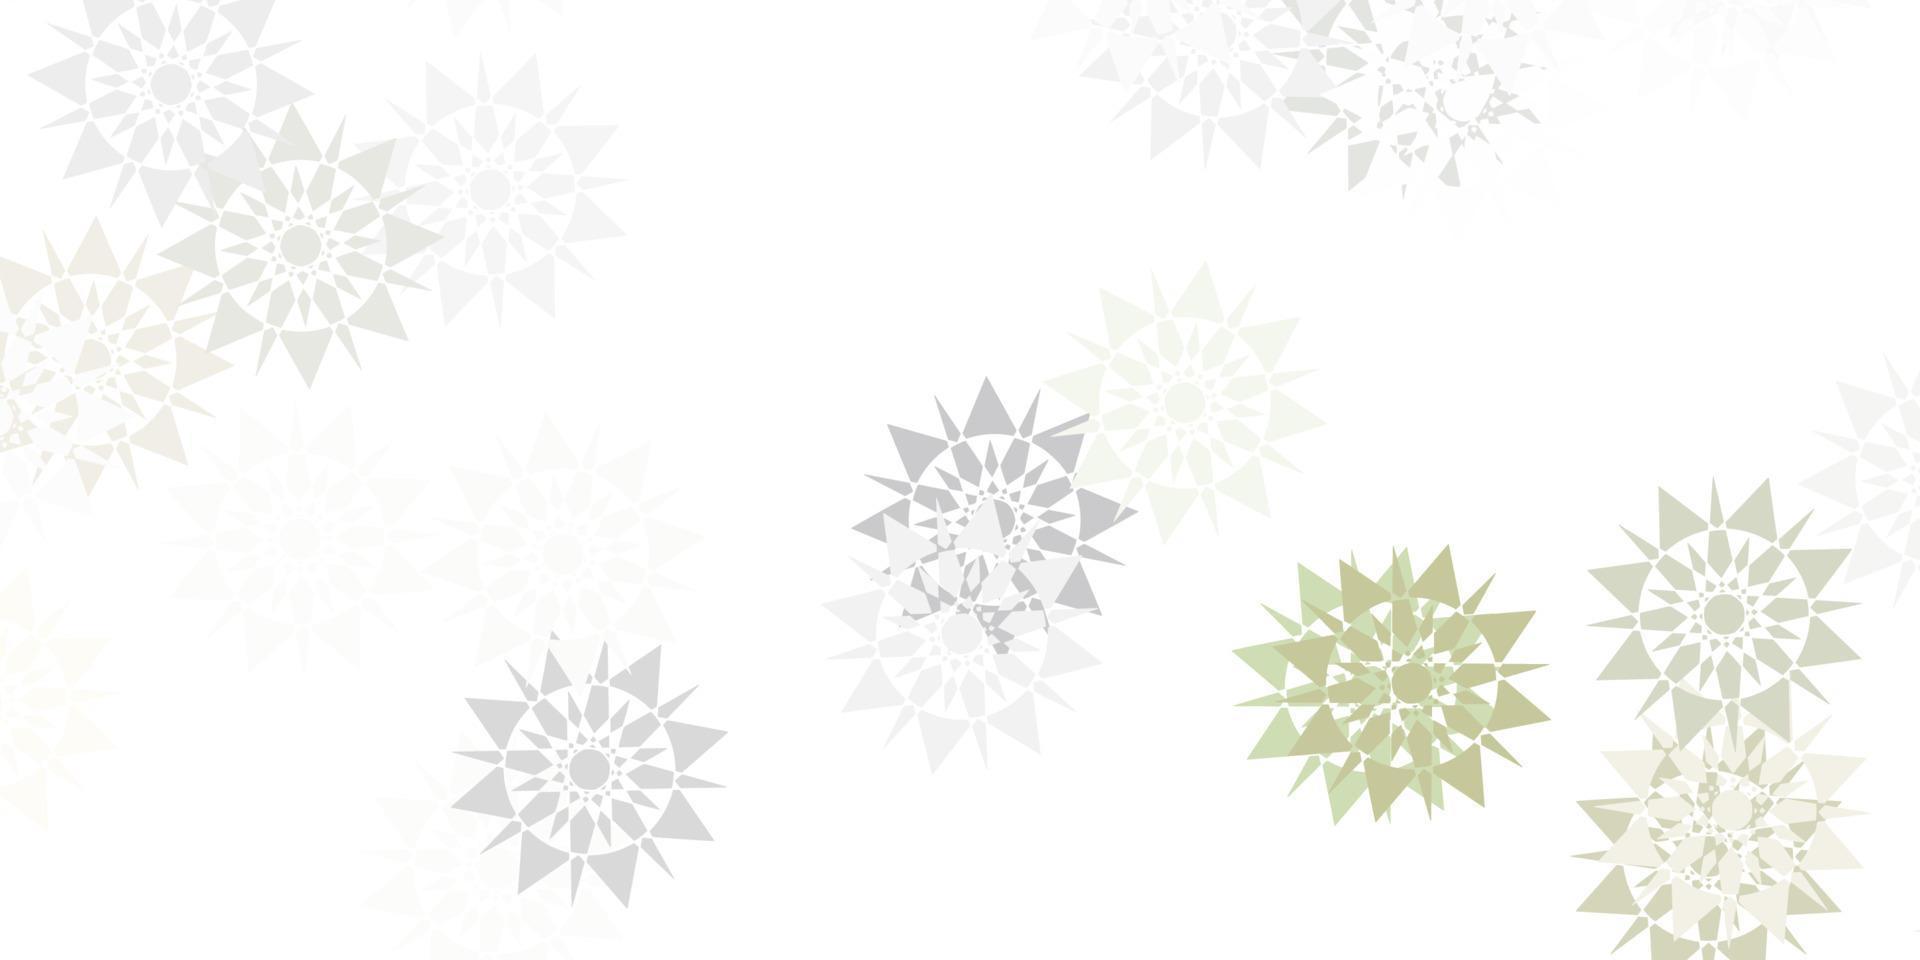 layout de vetor cinza claro com lindos flocos de neve.